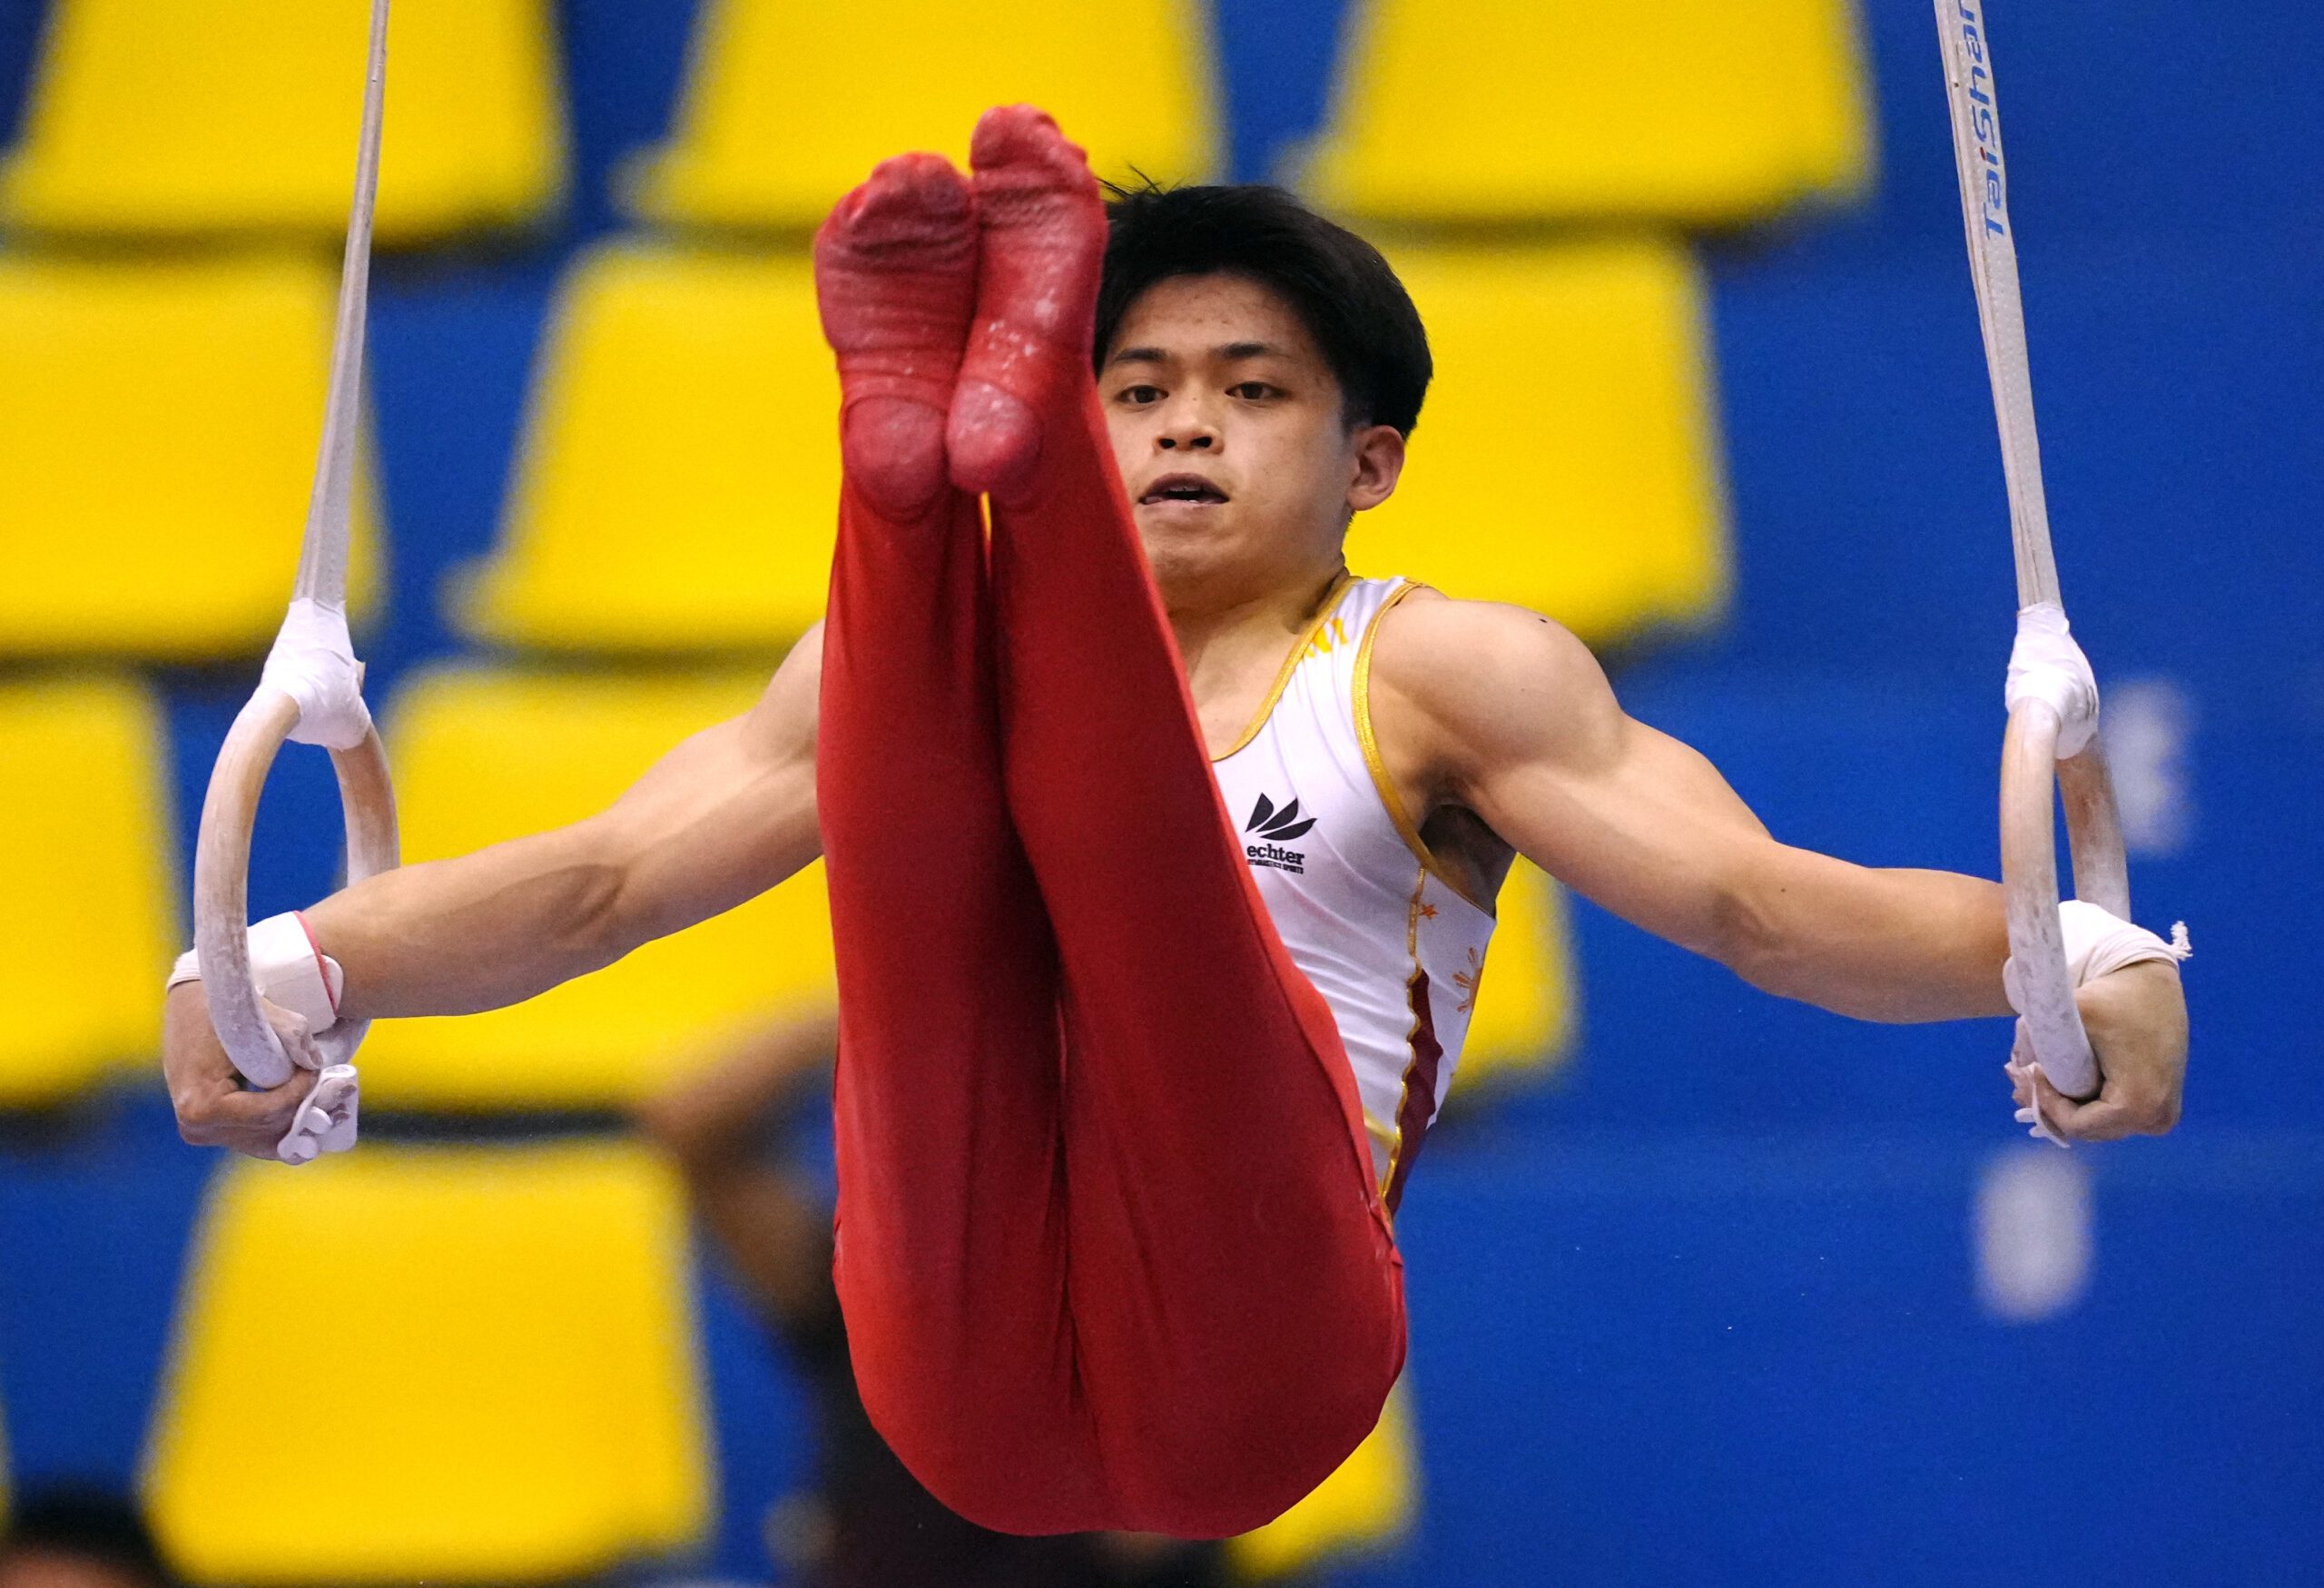 Men's Artistic Gymnastics